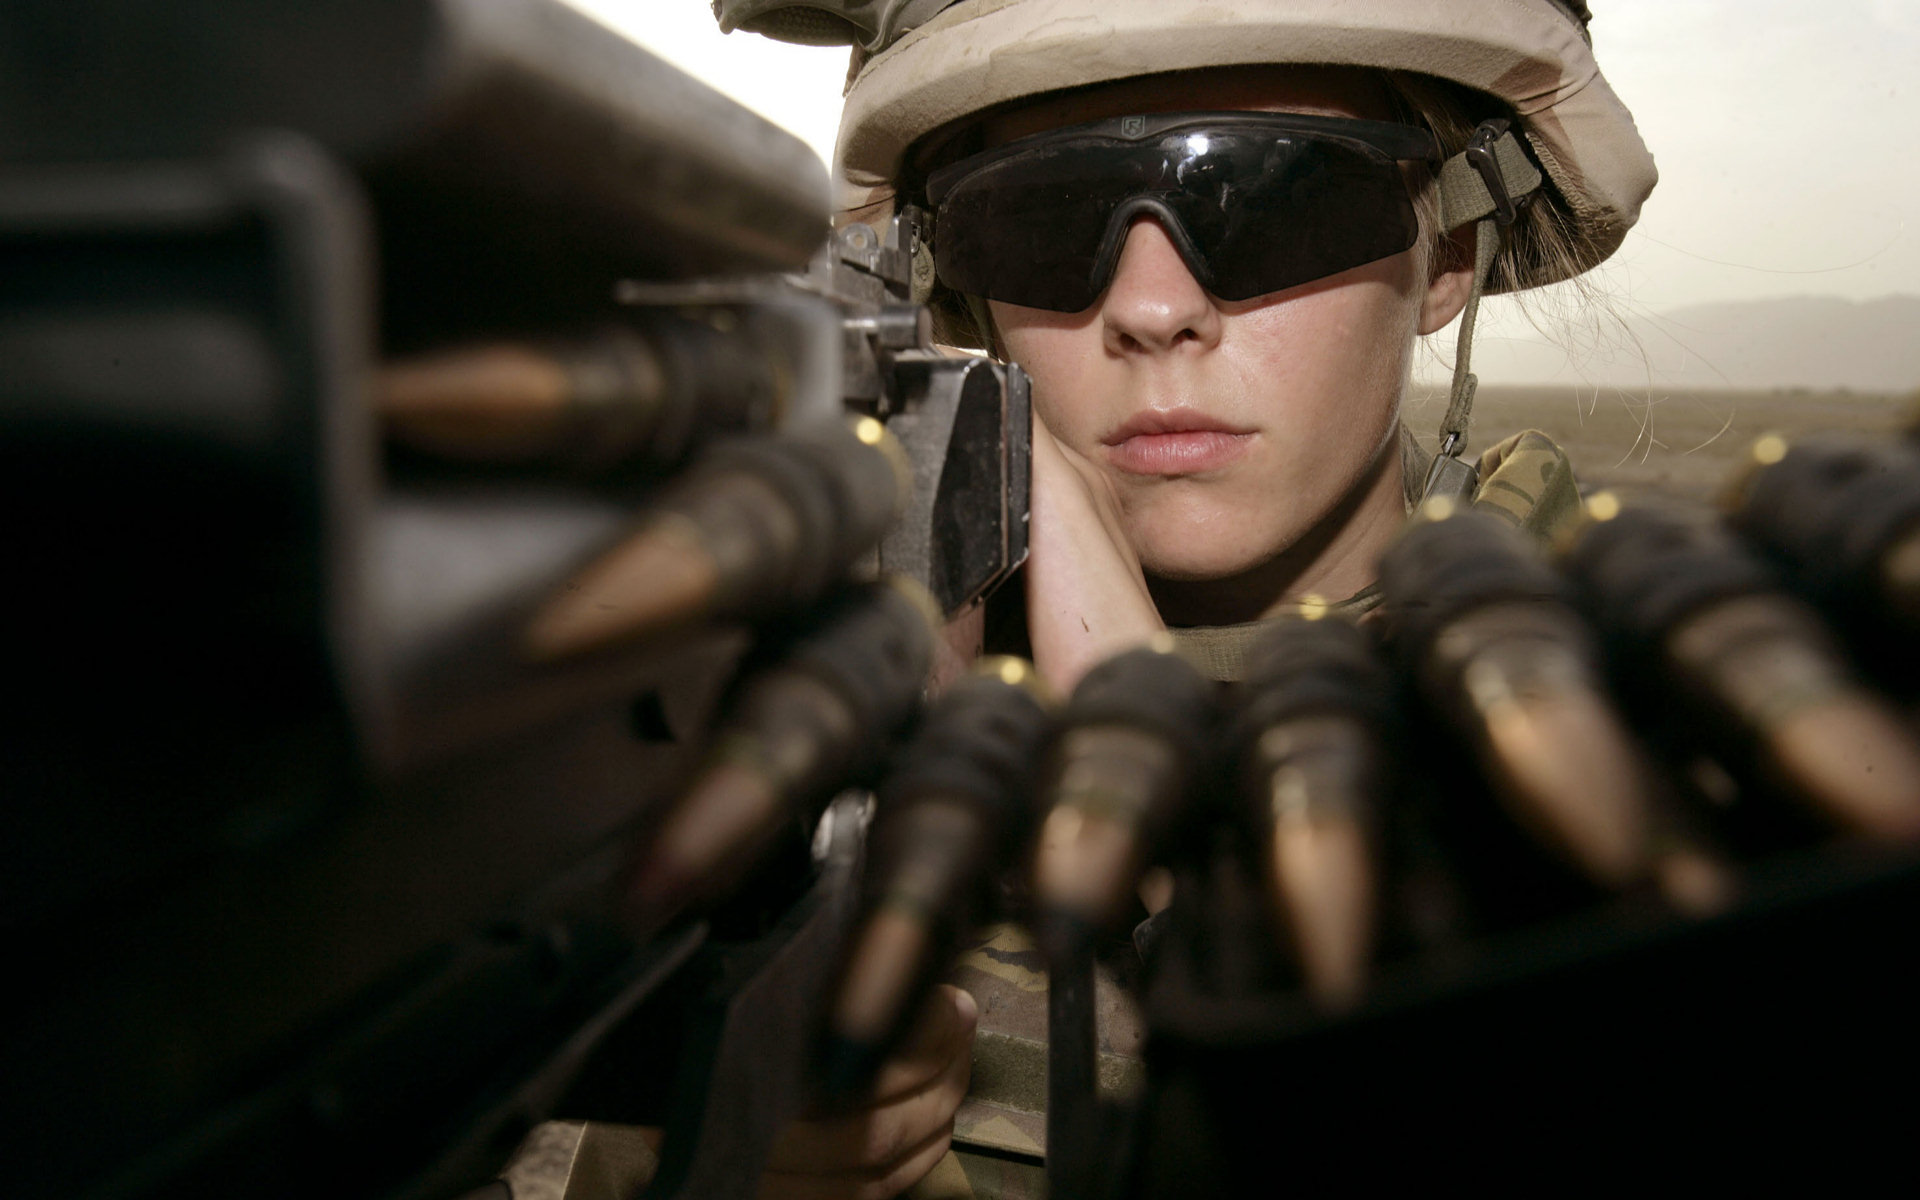 Скачать обои бесплатно Солдат, Военные, Девушки И Оружие картинка на рабочий стол ПК